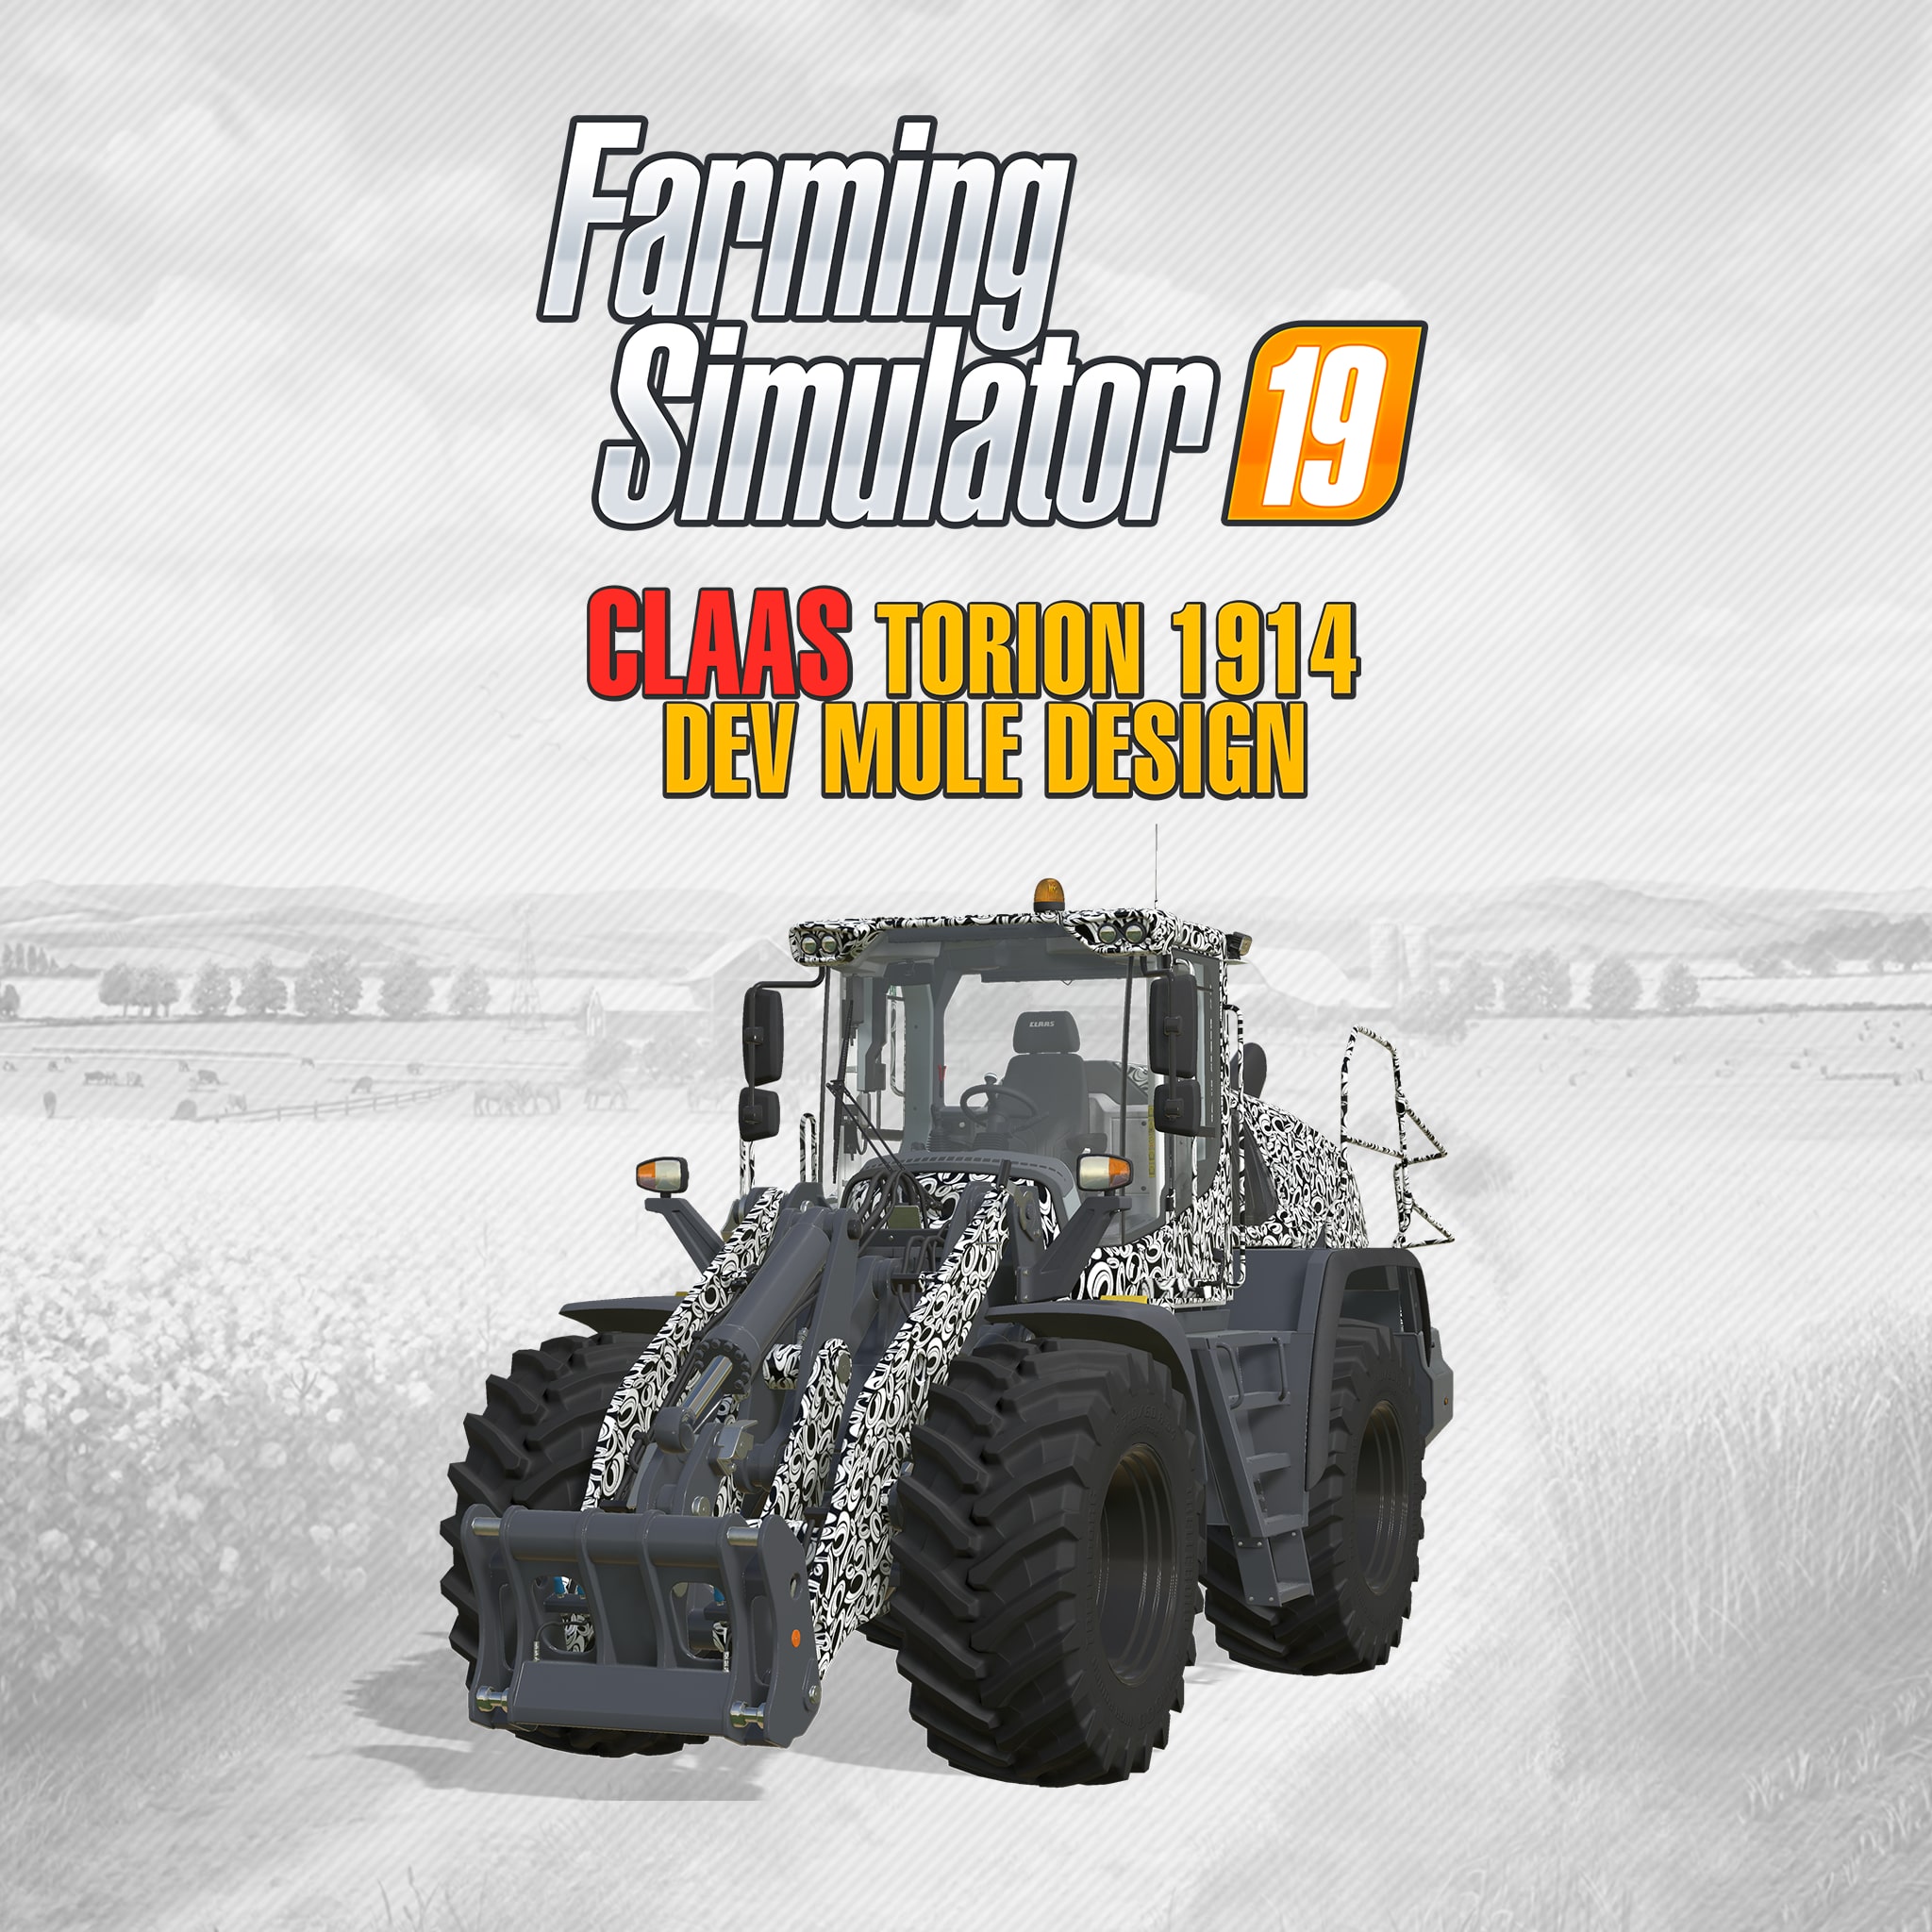 Landwirtschafts-Simulator 19 [Platinum Edition] PlayStation 4 gebraucht  kaufen